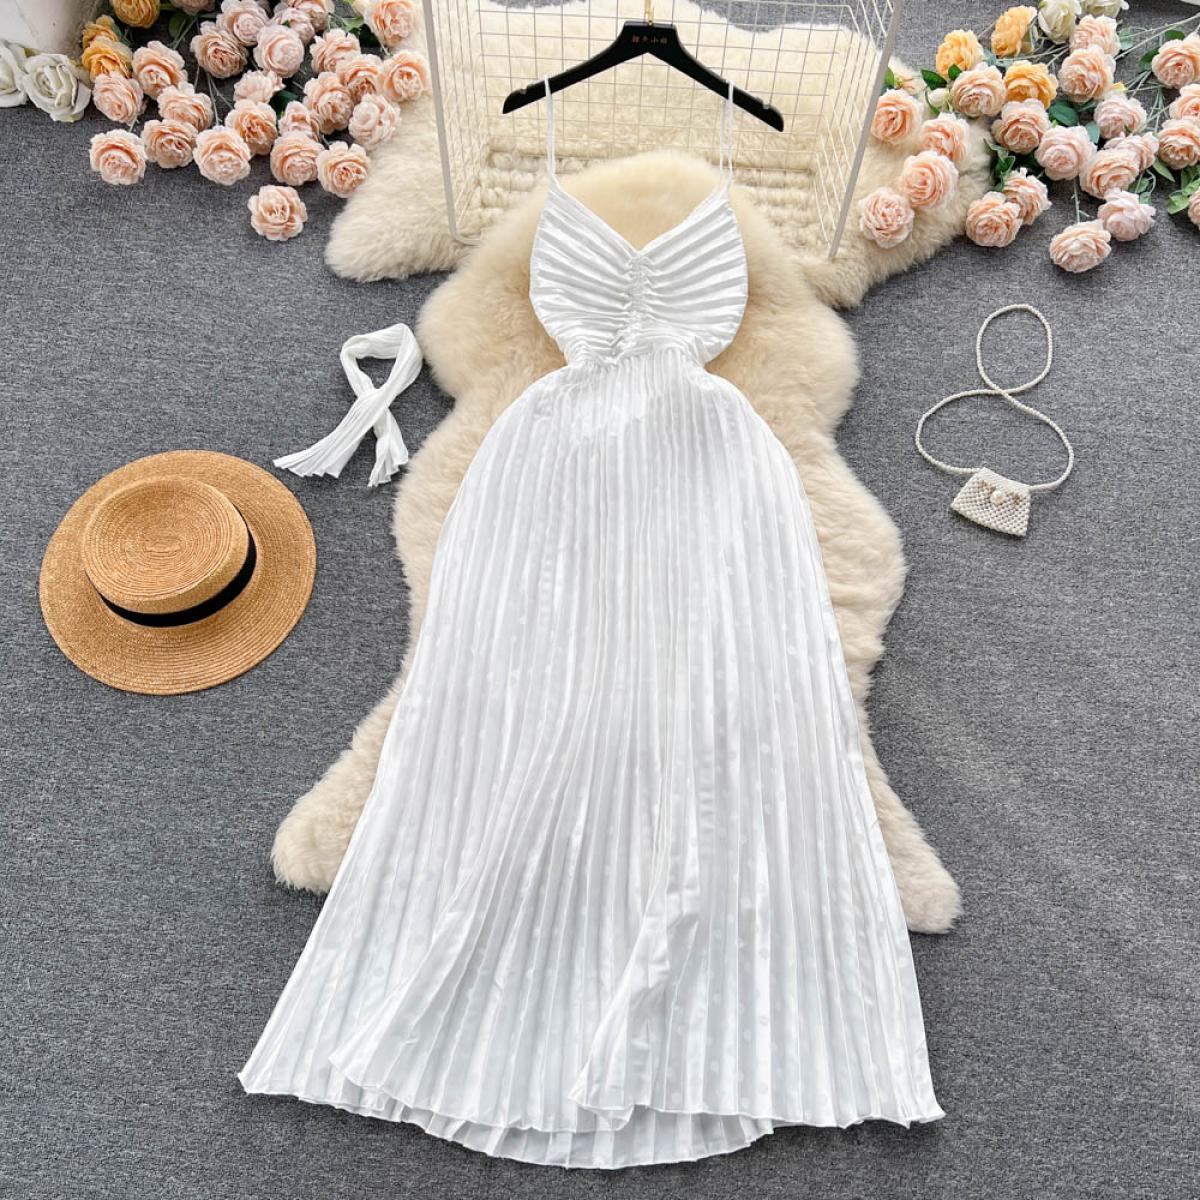 Vestido blanco largo elegante de verano para mujer plisado con